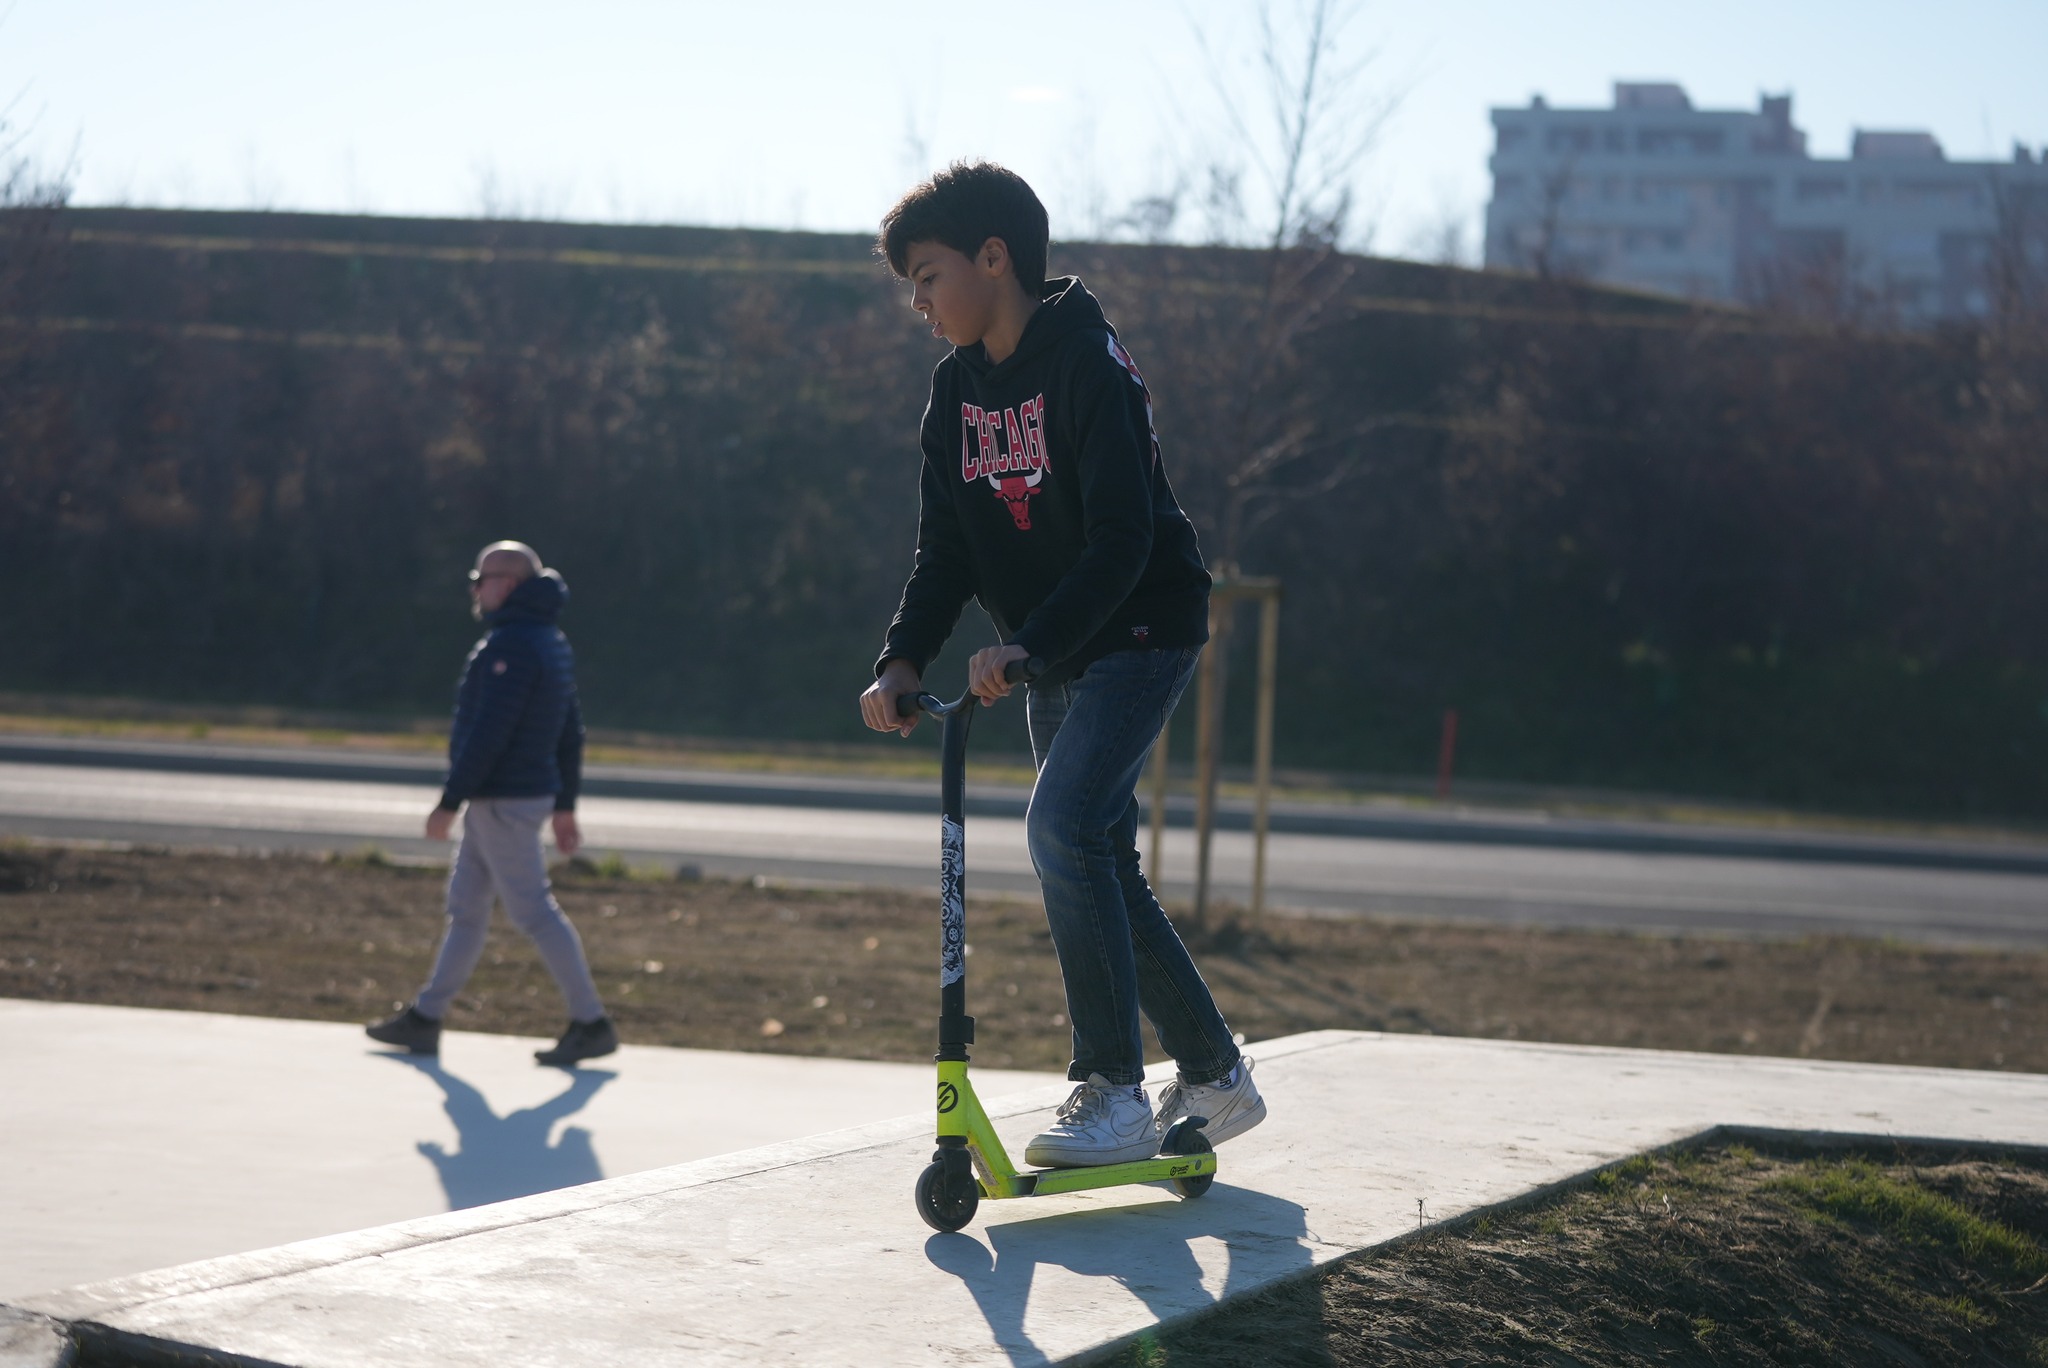 Inaugurazione skatepark: ragazzo sul monopattino